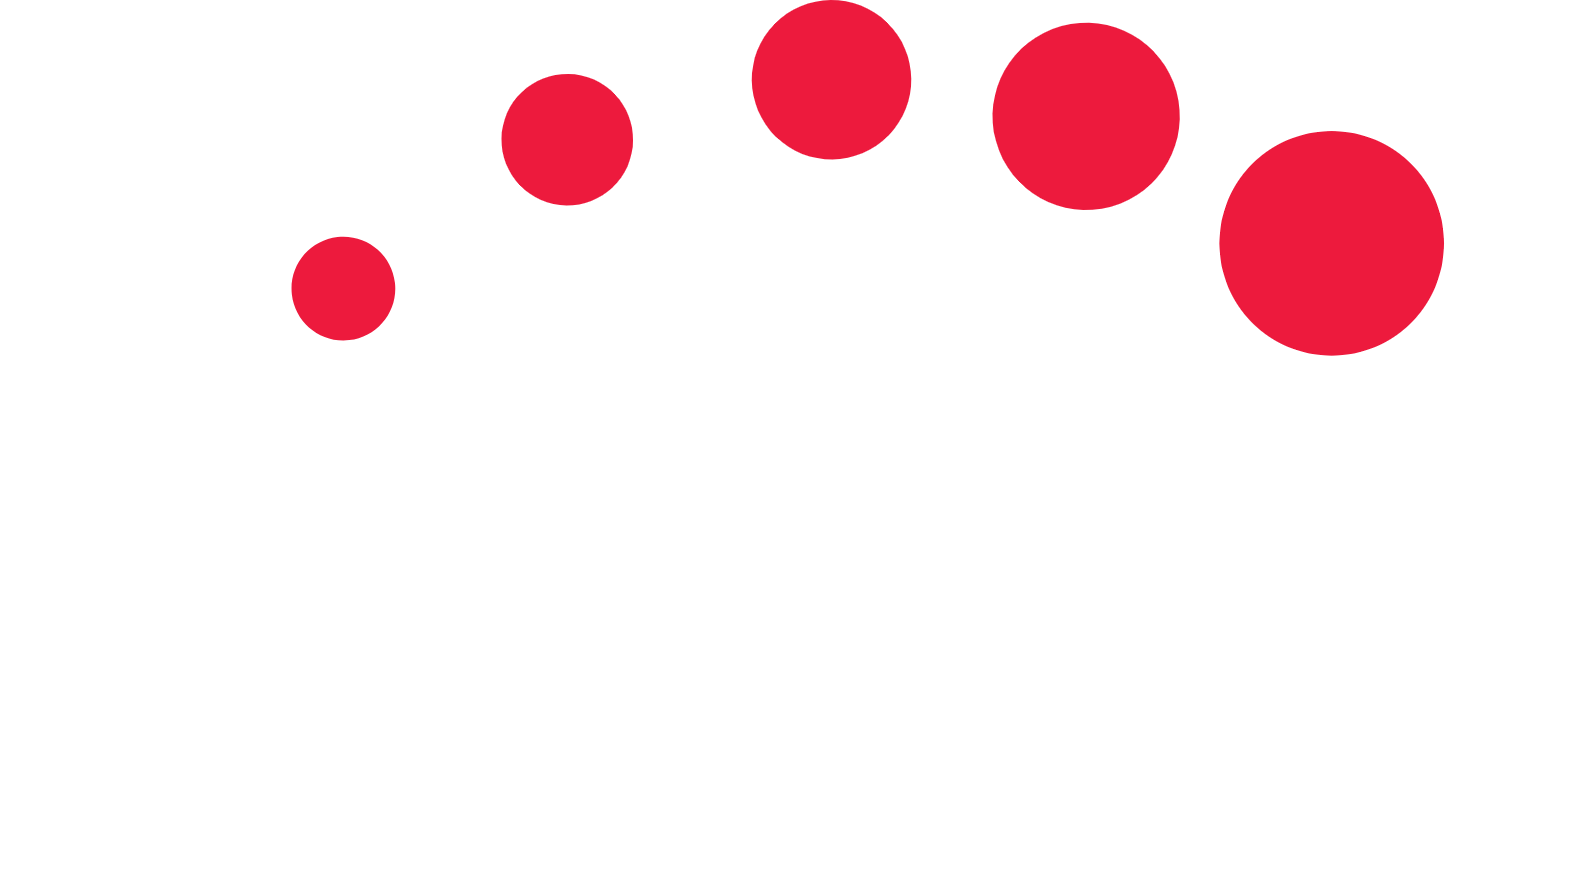 Singtel logo large for dark backgrounds (transparent PNG)